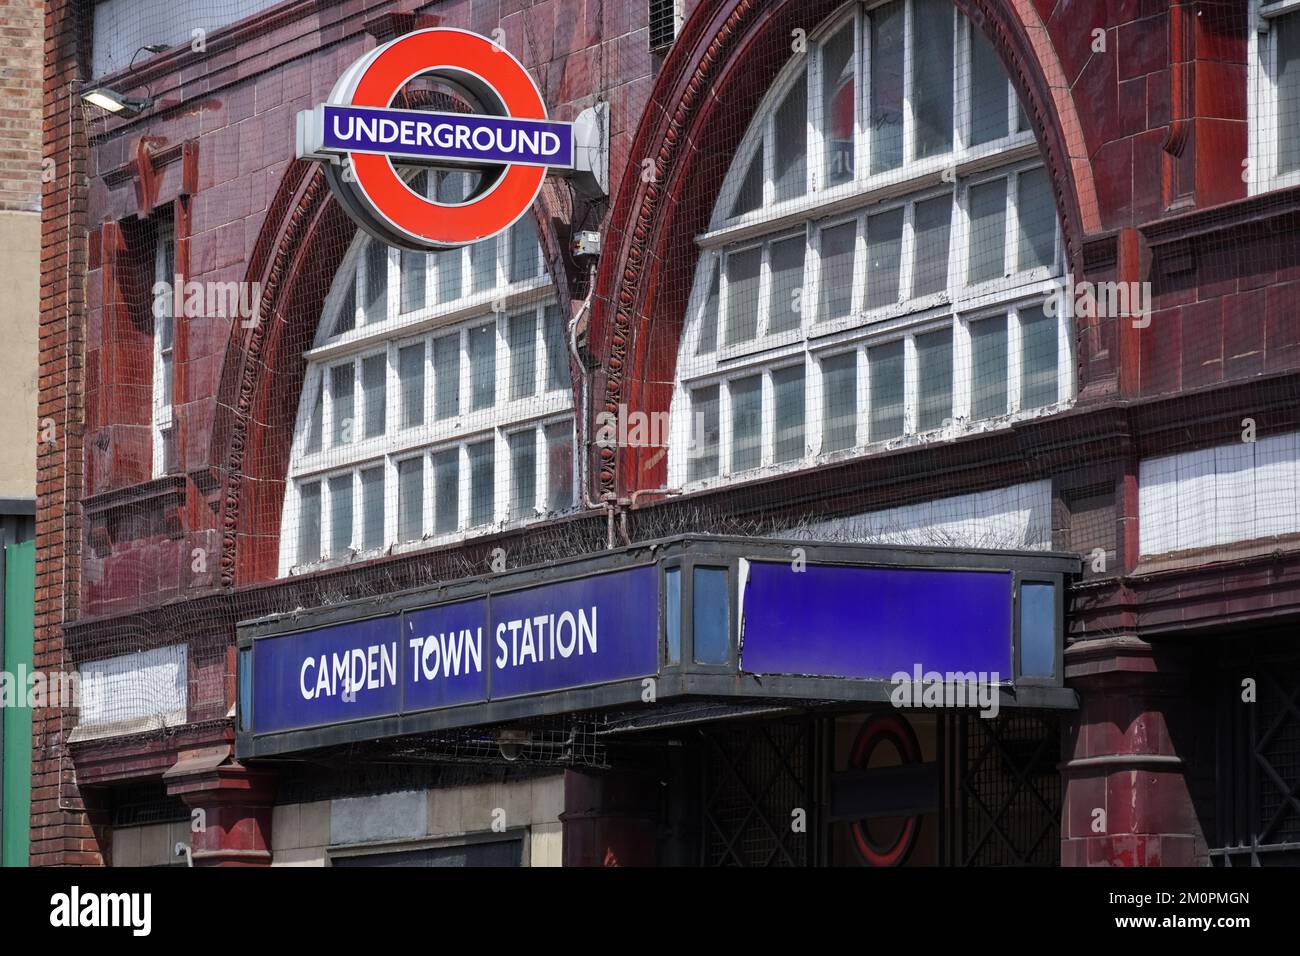 Camden Town métro, station de métro Londres Angleterre Royaume-Uni Banque D'Images